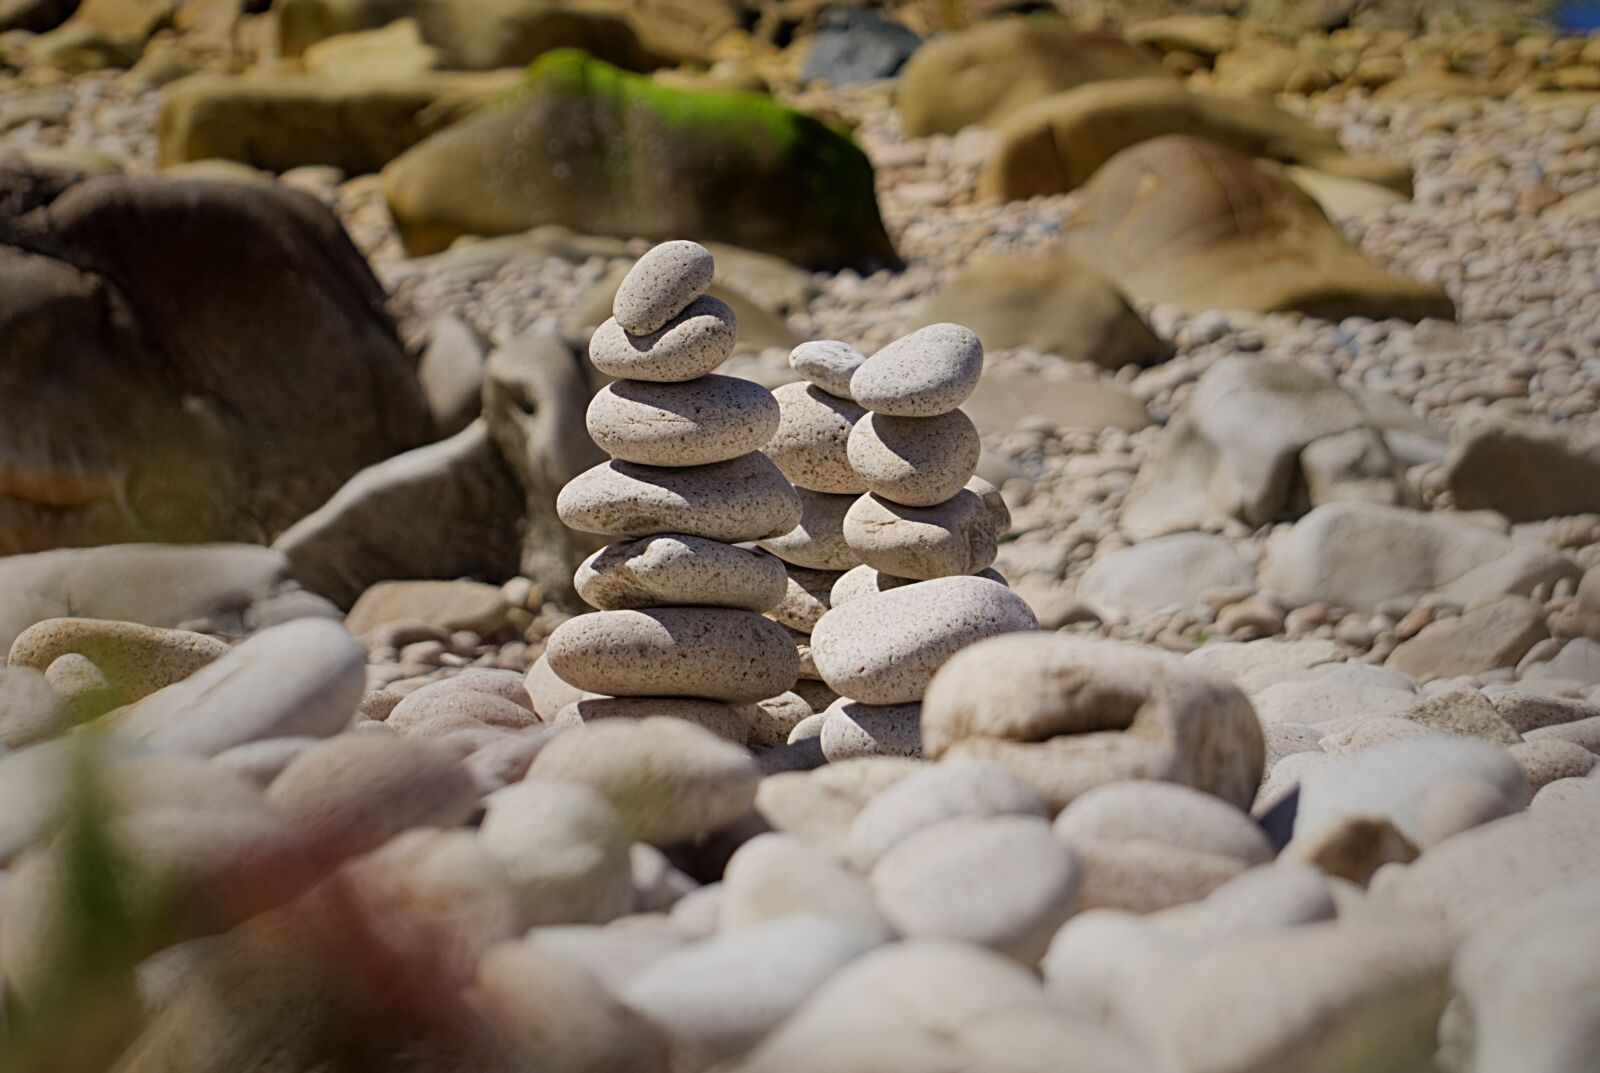 Sony E 55-210mm F4.5-6.3 OSS sample photo. Beach, pebbles, stones photography